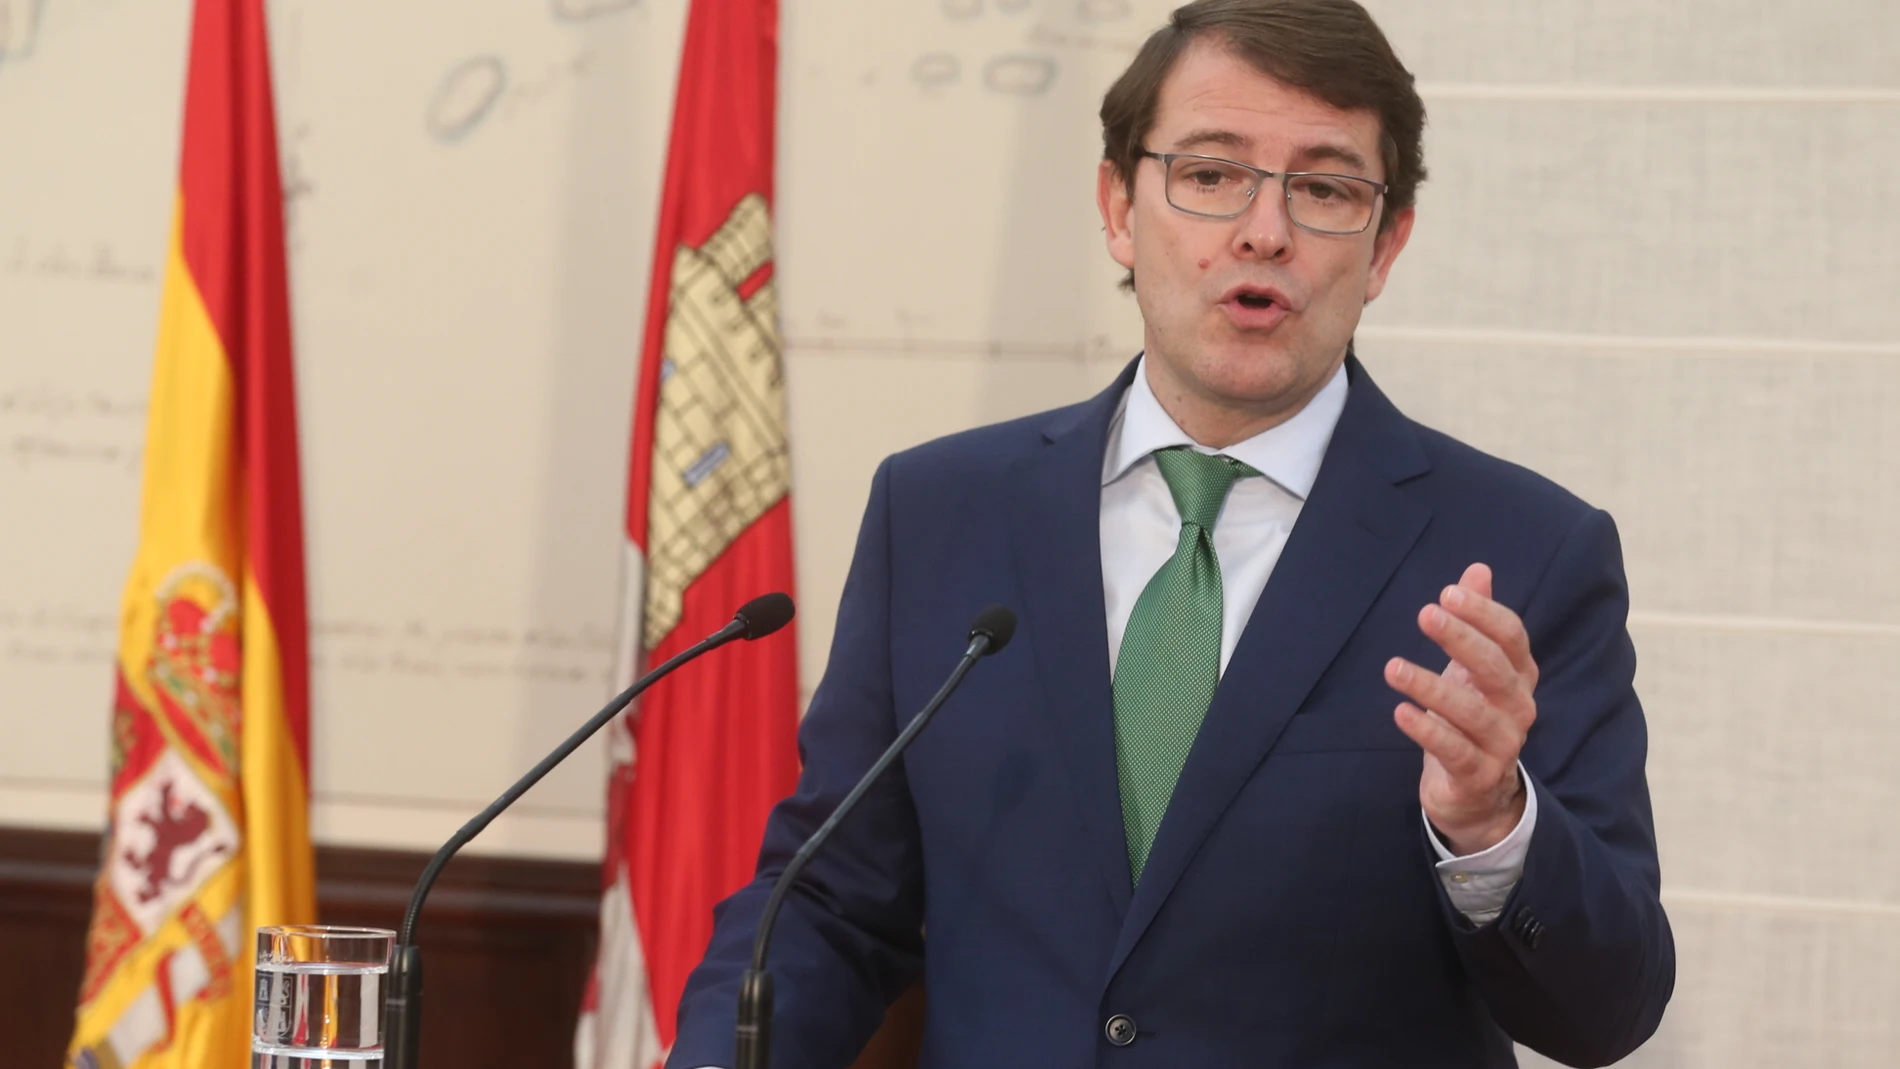 El presidente de Castilla y León anuncia los nombres de las personas que compondrán el nuevo Gobierno de la Junta